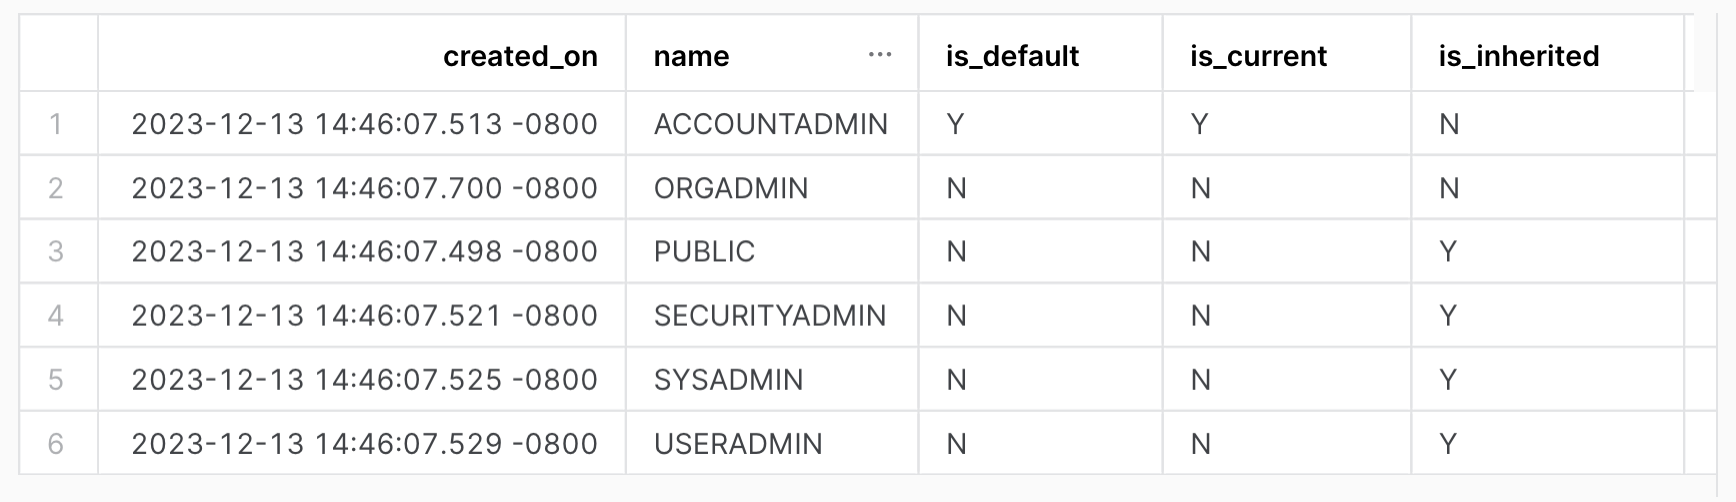 계정의 모든 역할을 표시합니다. created_on, name, is_default, is_current, is_inherited 열이 포함된 테이블 출력입니다.